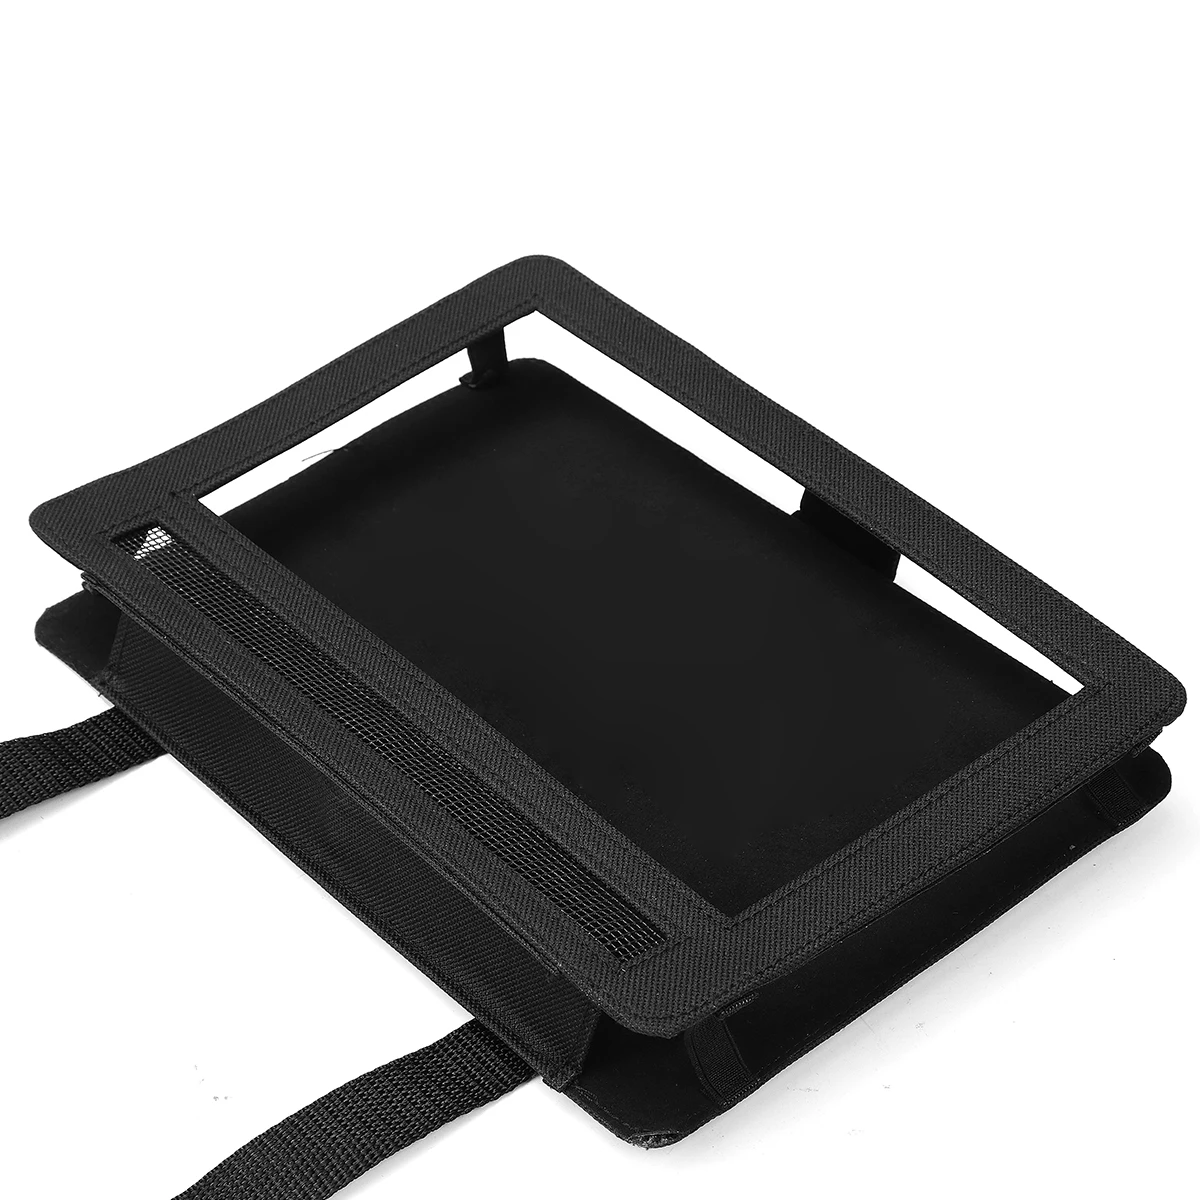 Powstro 3 размера Автомобильный подголовник держатель ремень безопасности для Ipad висячий мешок DVD планшет защитный для портативного DVD плеера планшета